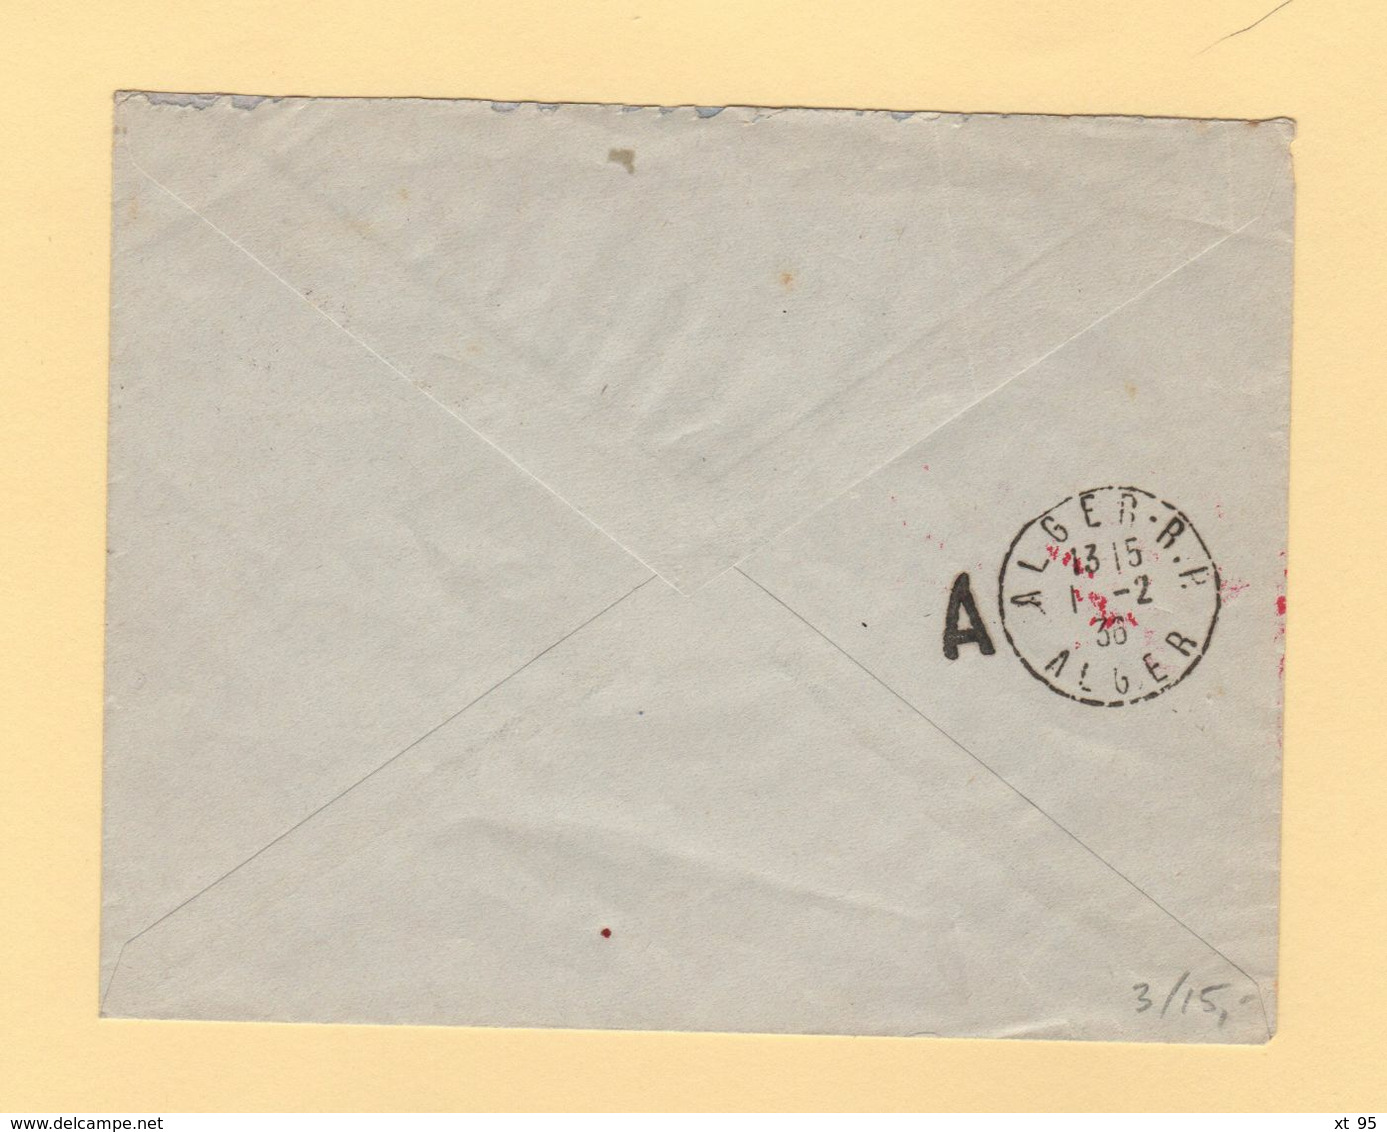 Tunisie - Premier Courrier Postal Aerien Tunisie Algerie - 1er Fevrier 1936 - Luftpost